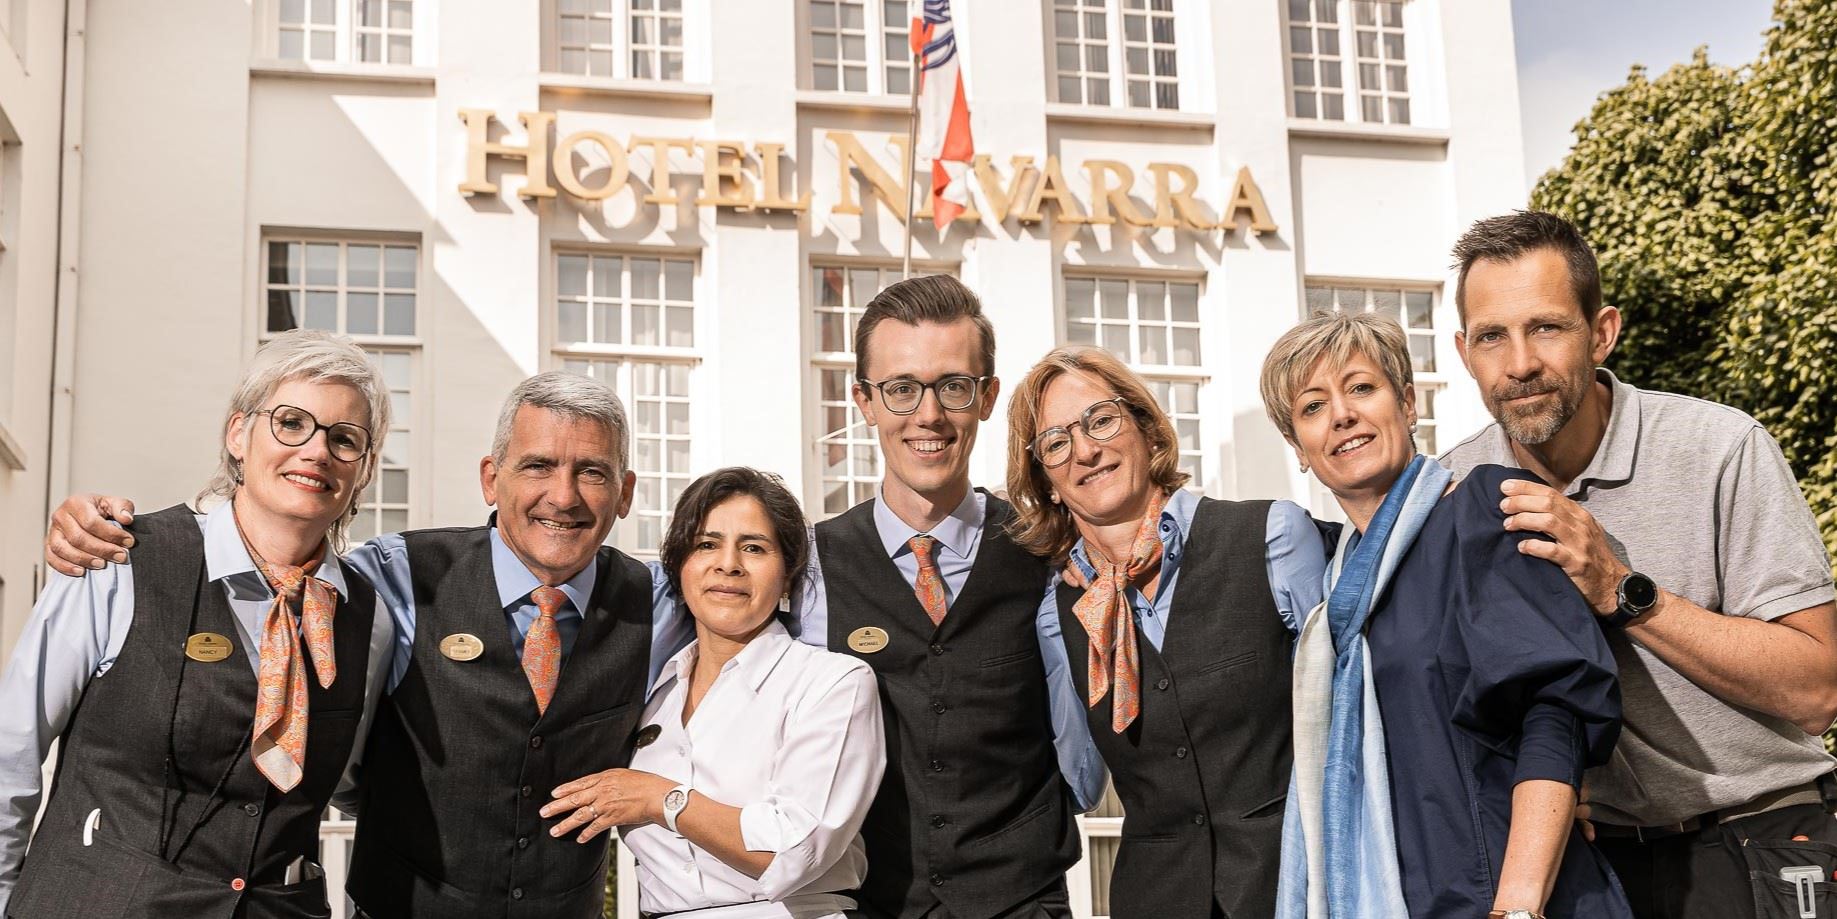 Hotel Navarra Bruges Our Team